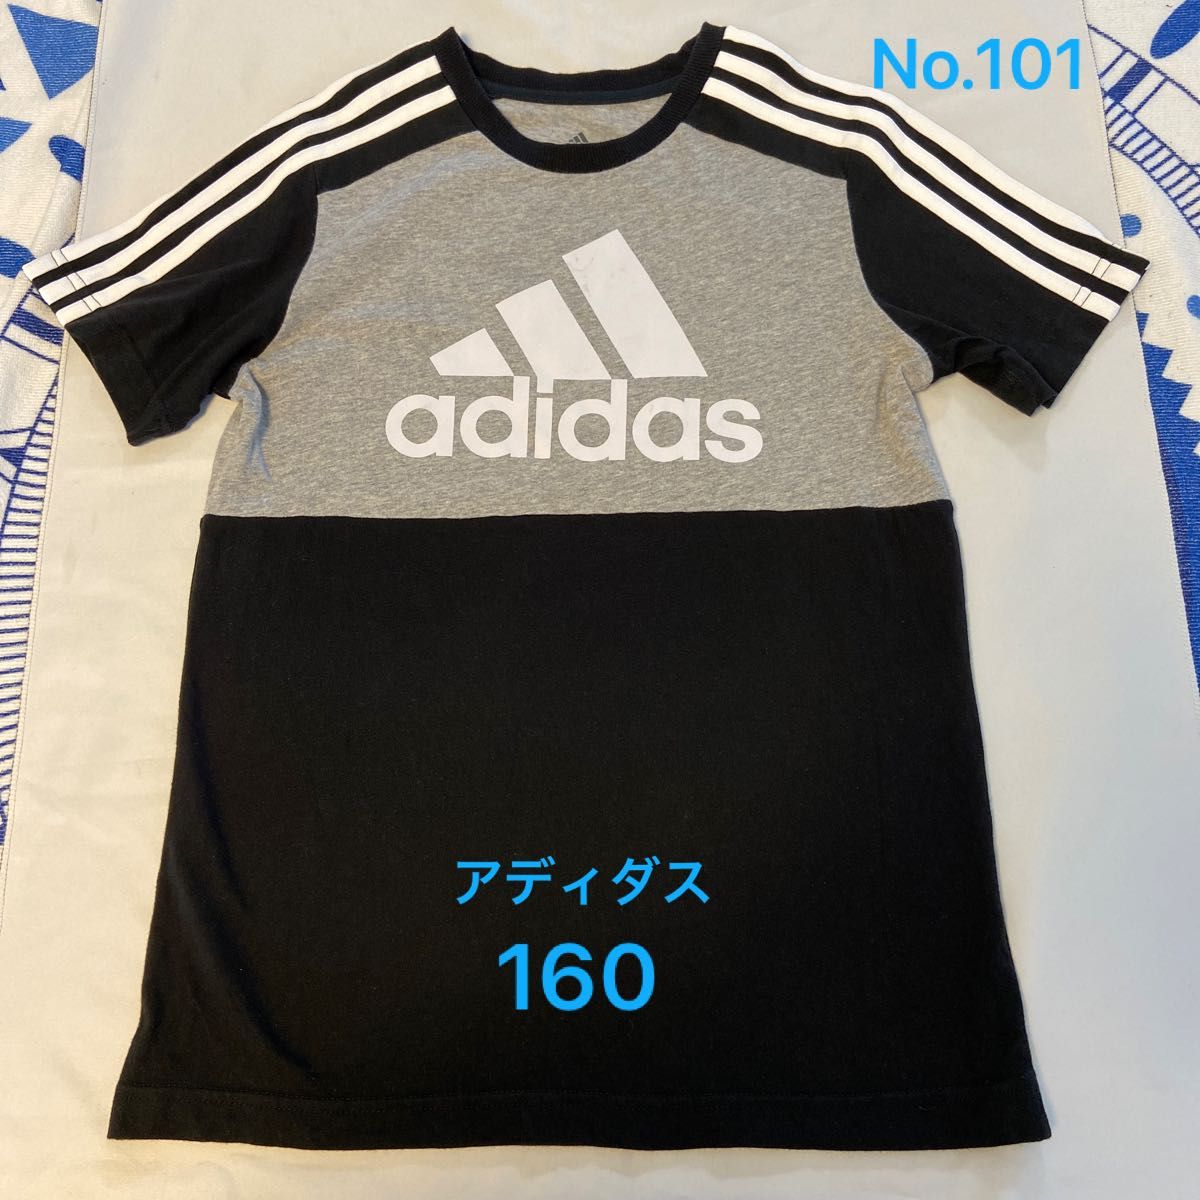 【USED】adidas アディダス 半袖Tシャツ Tシャツ 半袖 ブラック ロゴ 子供服160 No.101